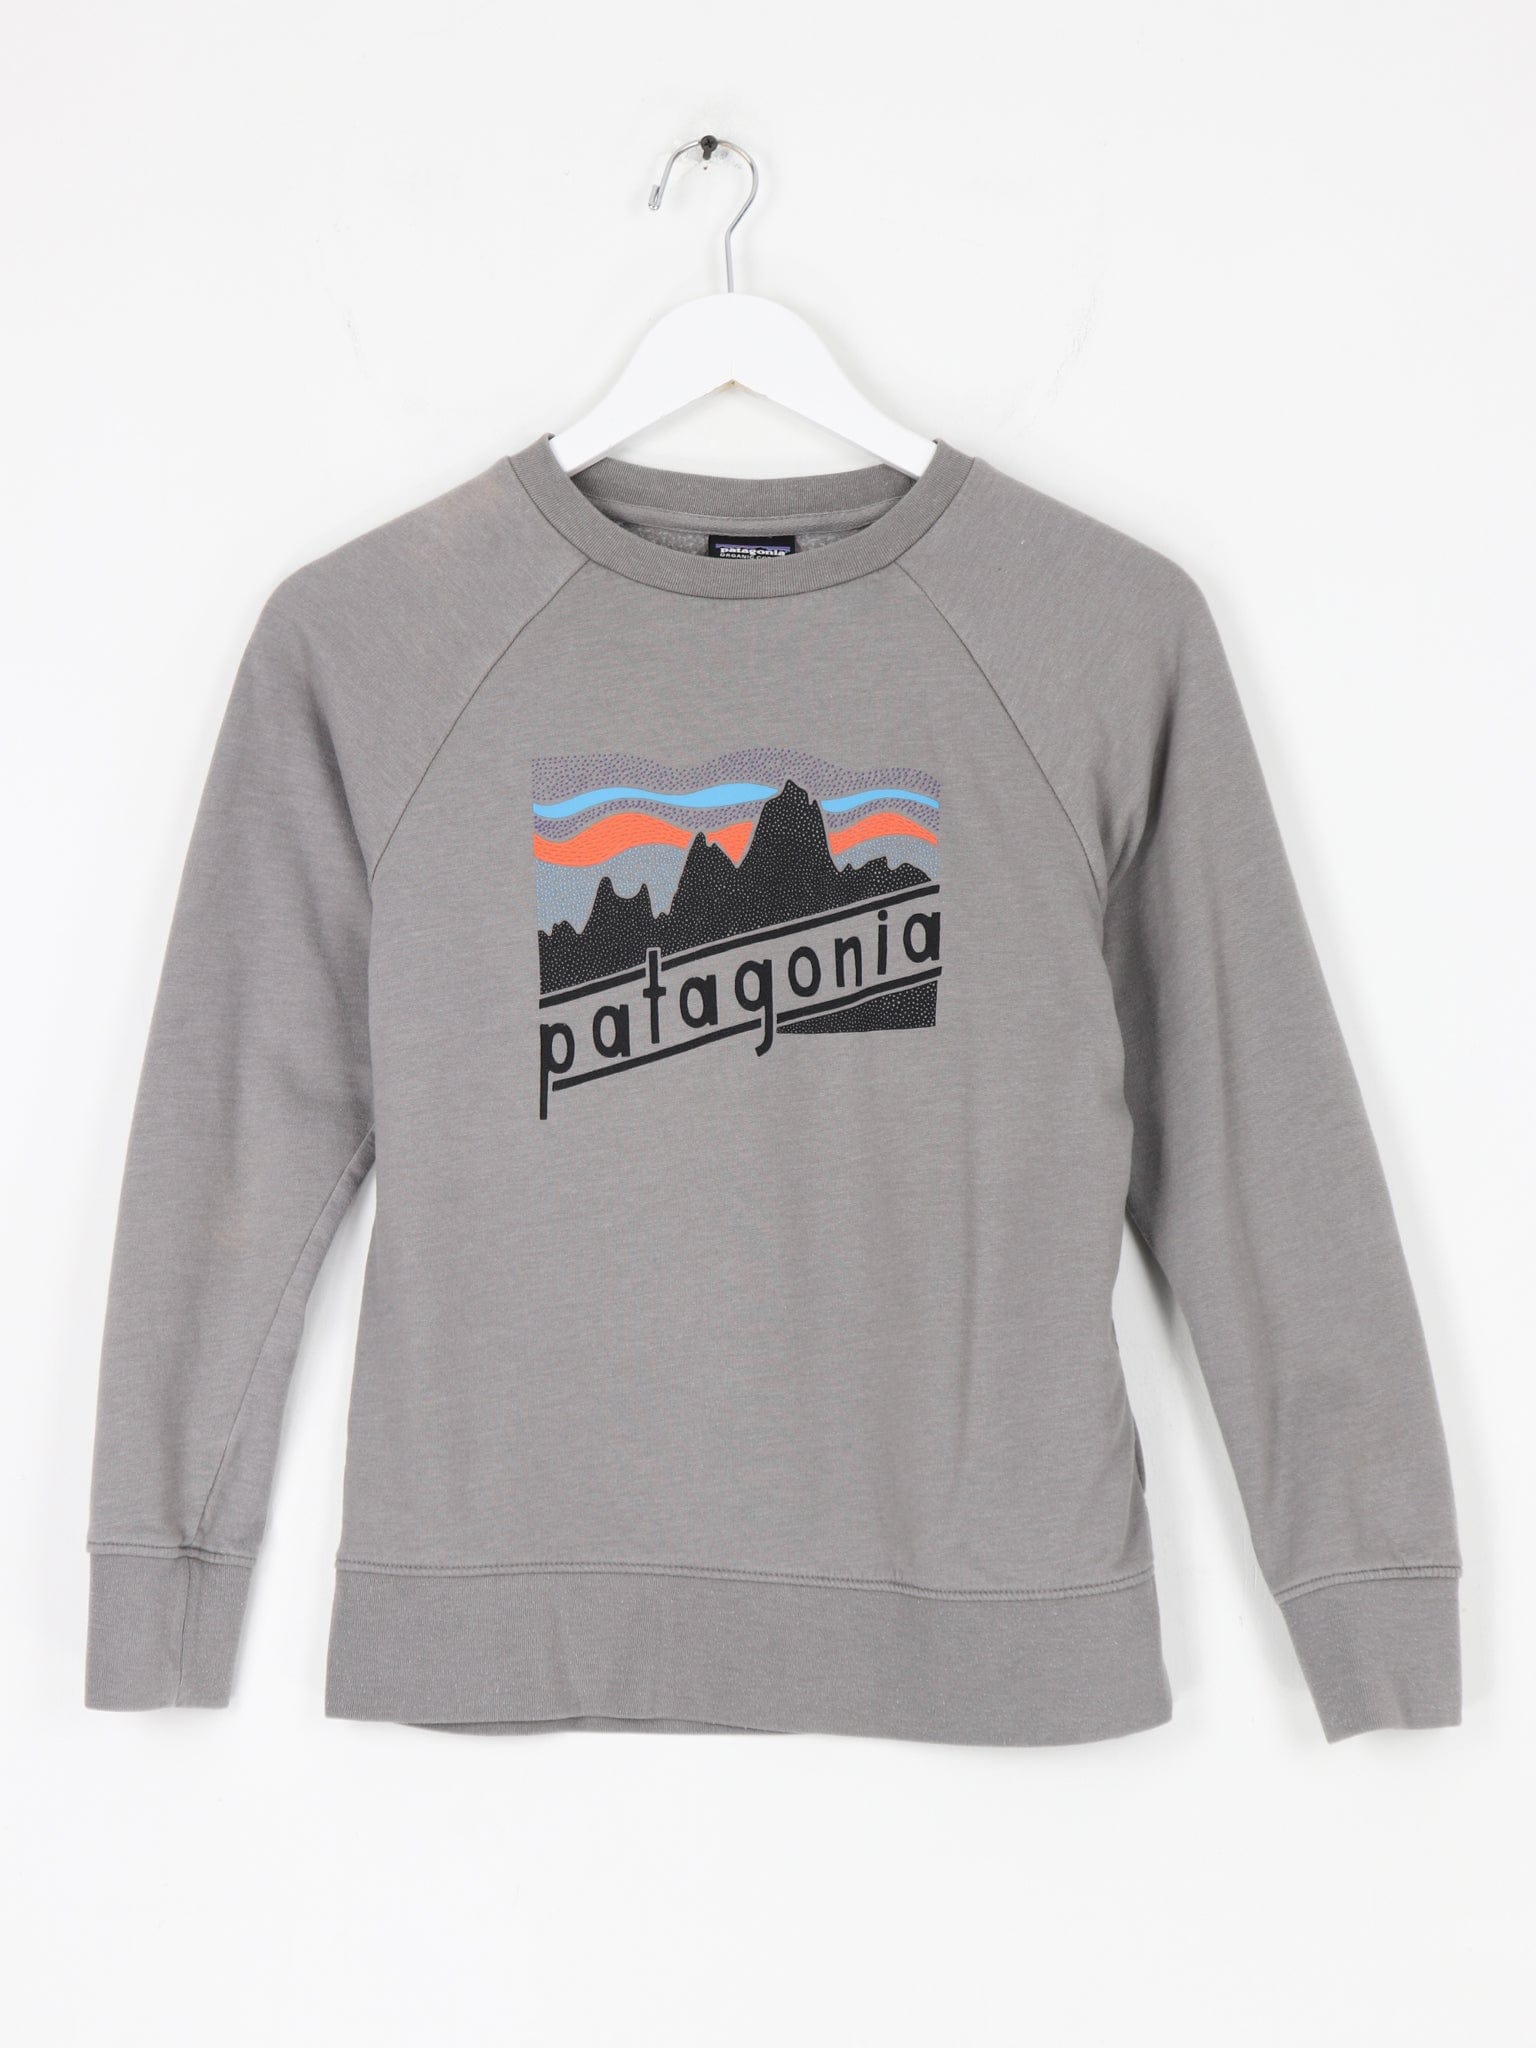 Patagonia Sweatshirts & Hoodies Patagonia Lightweight Sweatshirt Youth Size Medium